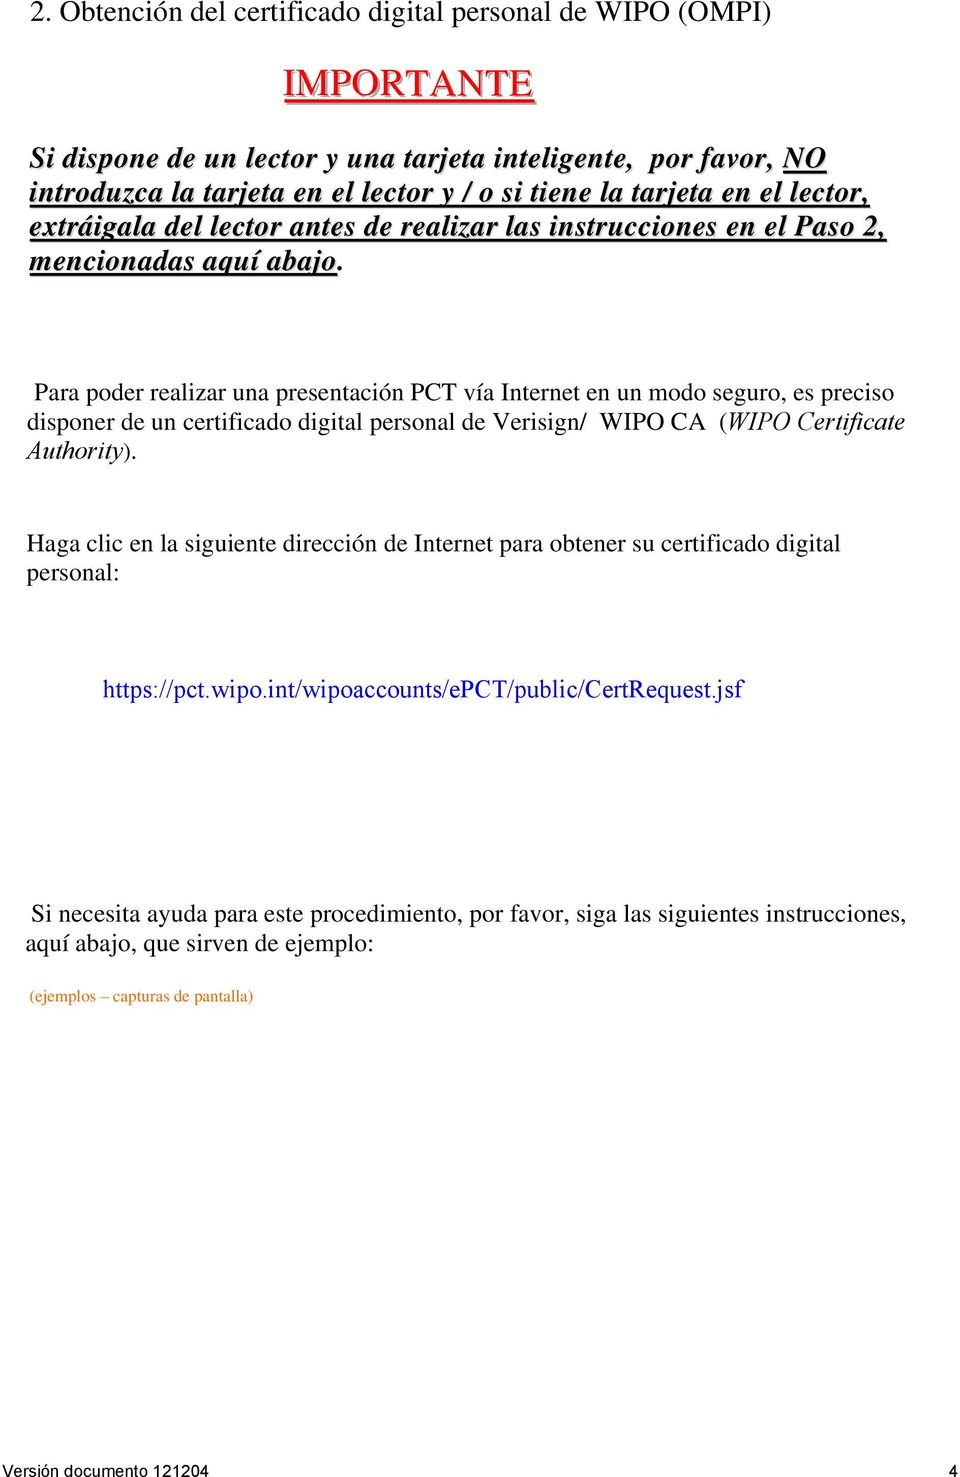 Para poder realizar una presentación PCT vía Internet en un modo seguro, es preciso disponer de un certificado digital personal de Verisign/ WIPO CA (WIPO Certificate Authority).